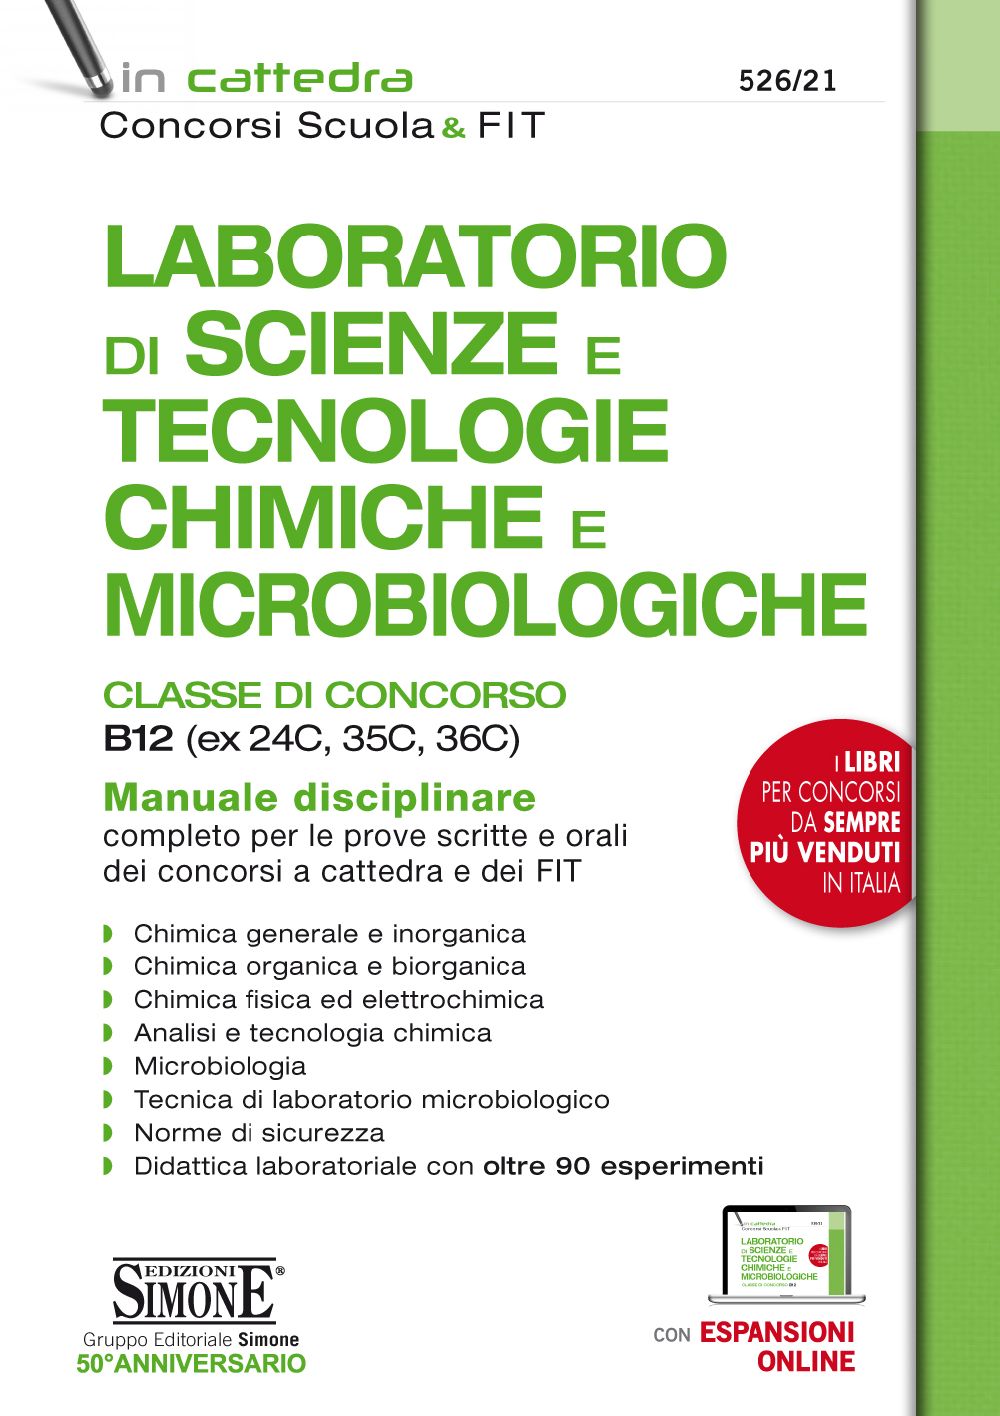 Laboratorio di Scienze e Tecnologie Chimiche e Microbiologiche - (B12) - 526/21